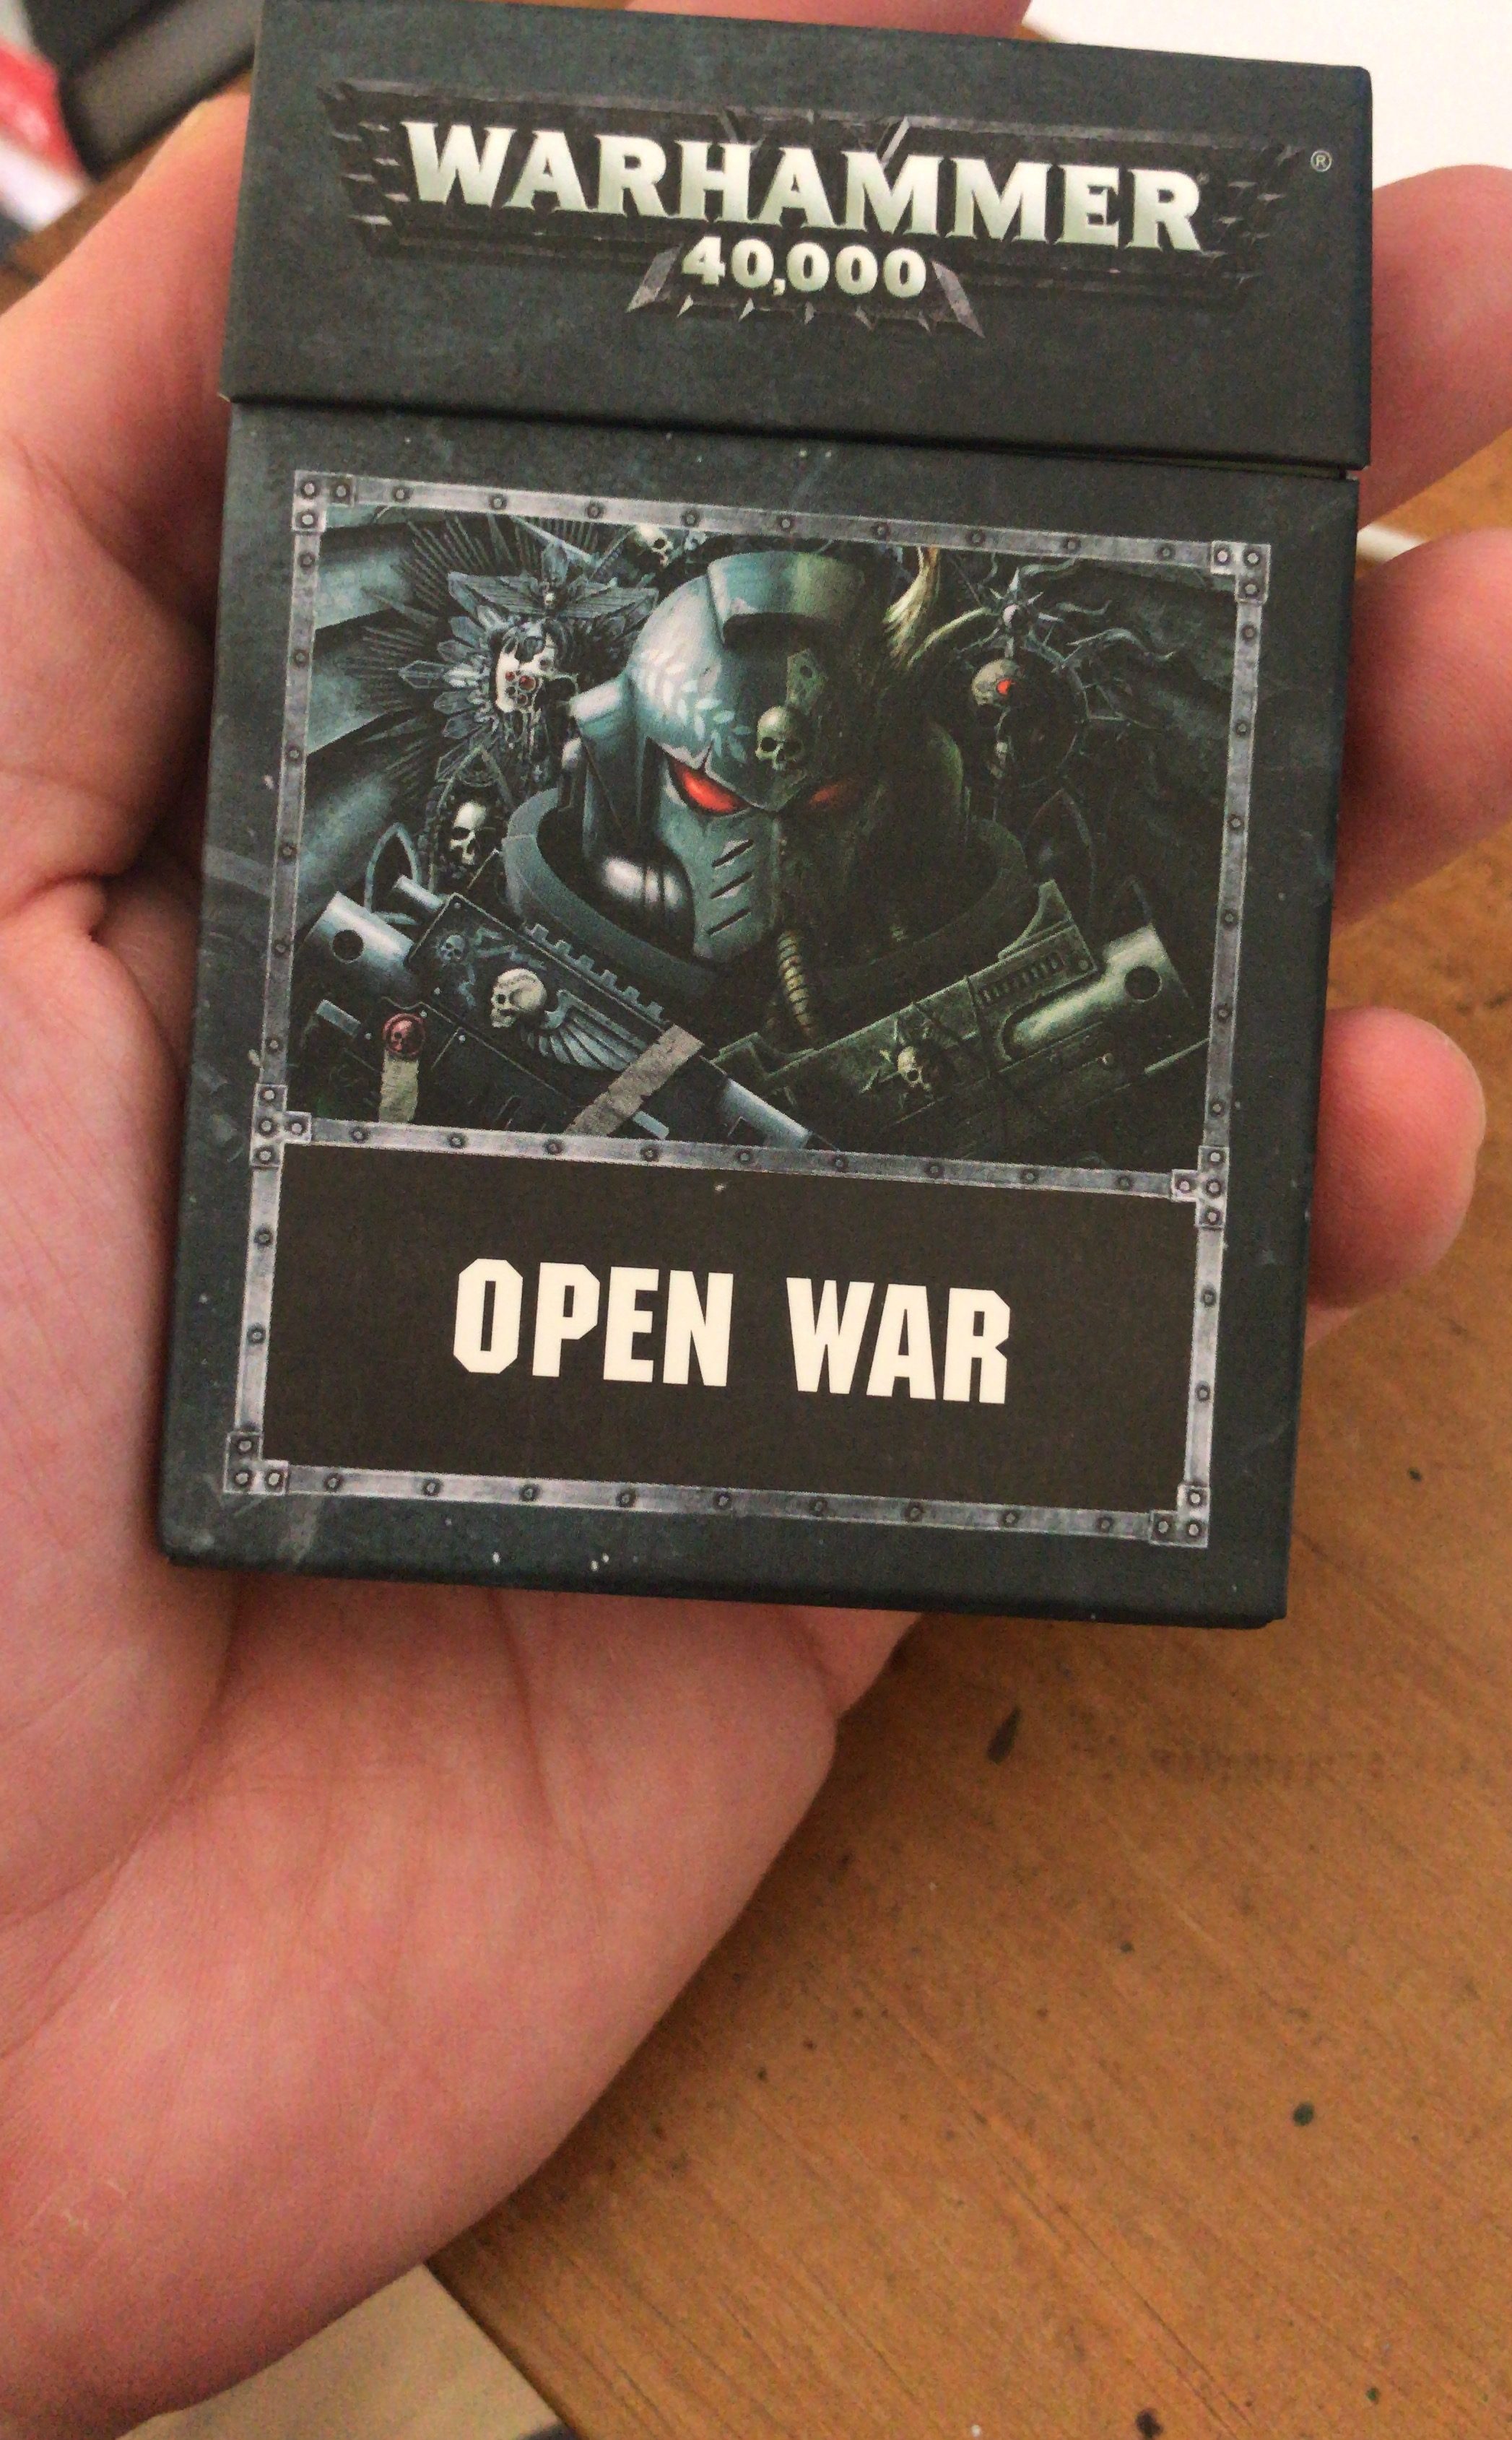 WAR: Cards, Imagem